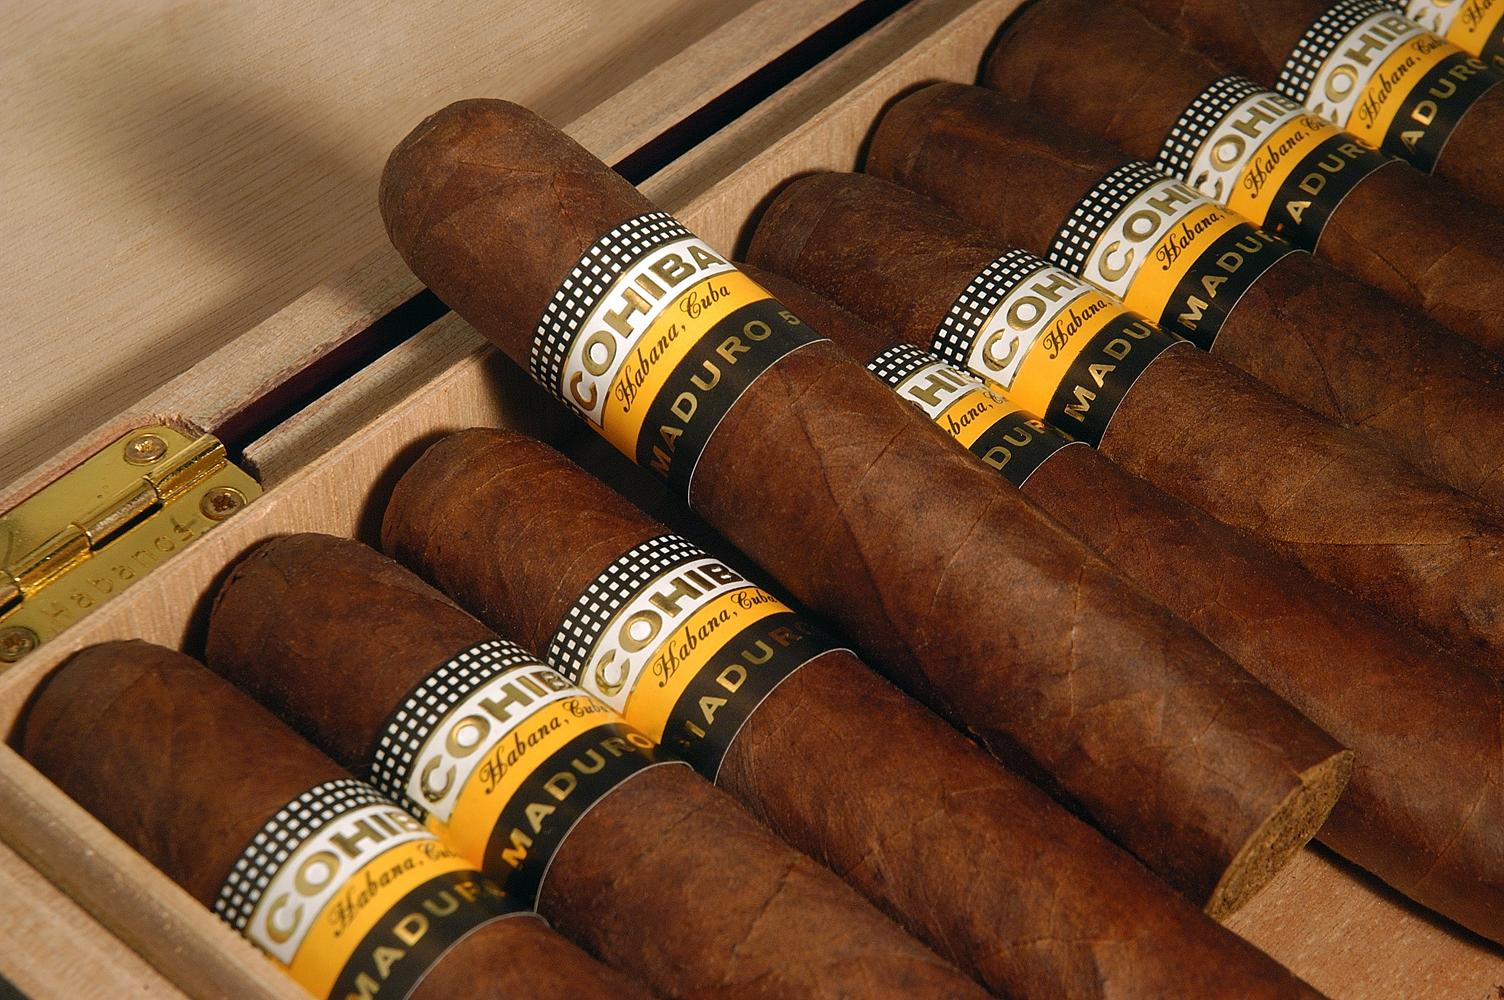 Xì gà Cuba được sản xuất từ các thương hiệu nổi tiếng